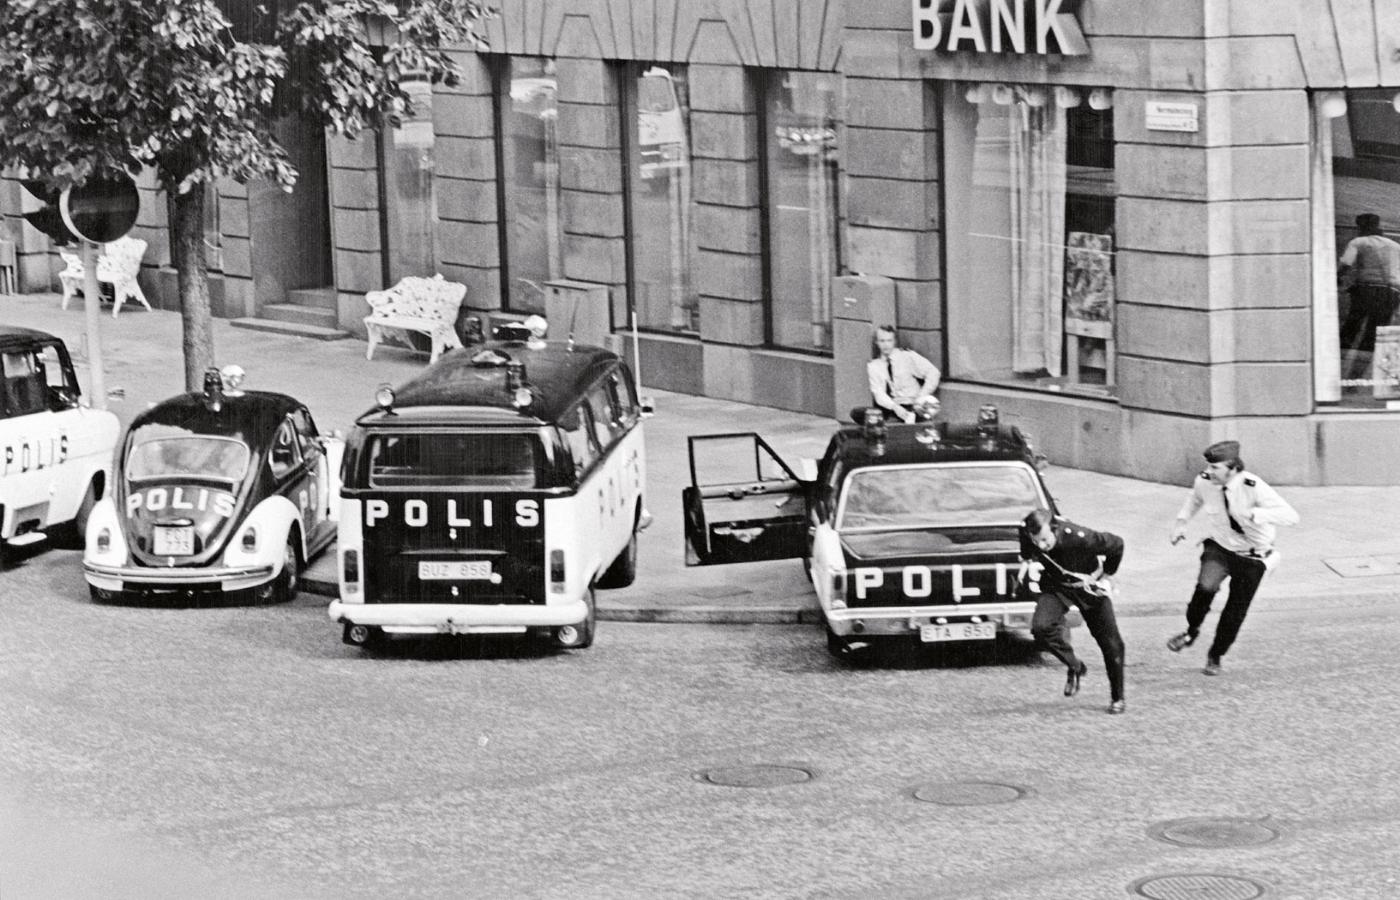 Radiowozy przed okupowanym przez porywaczy bankiem.